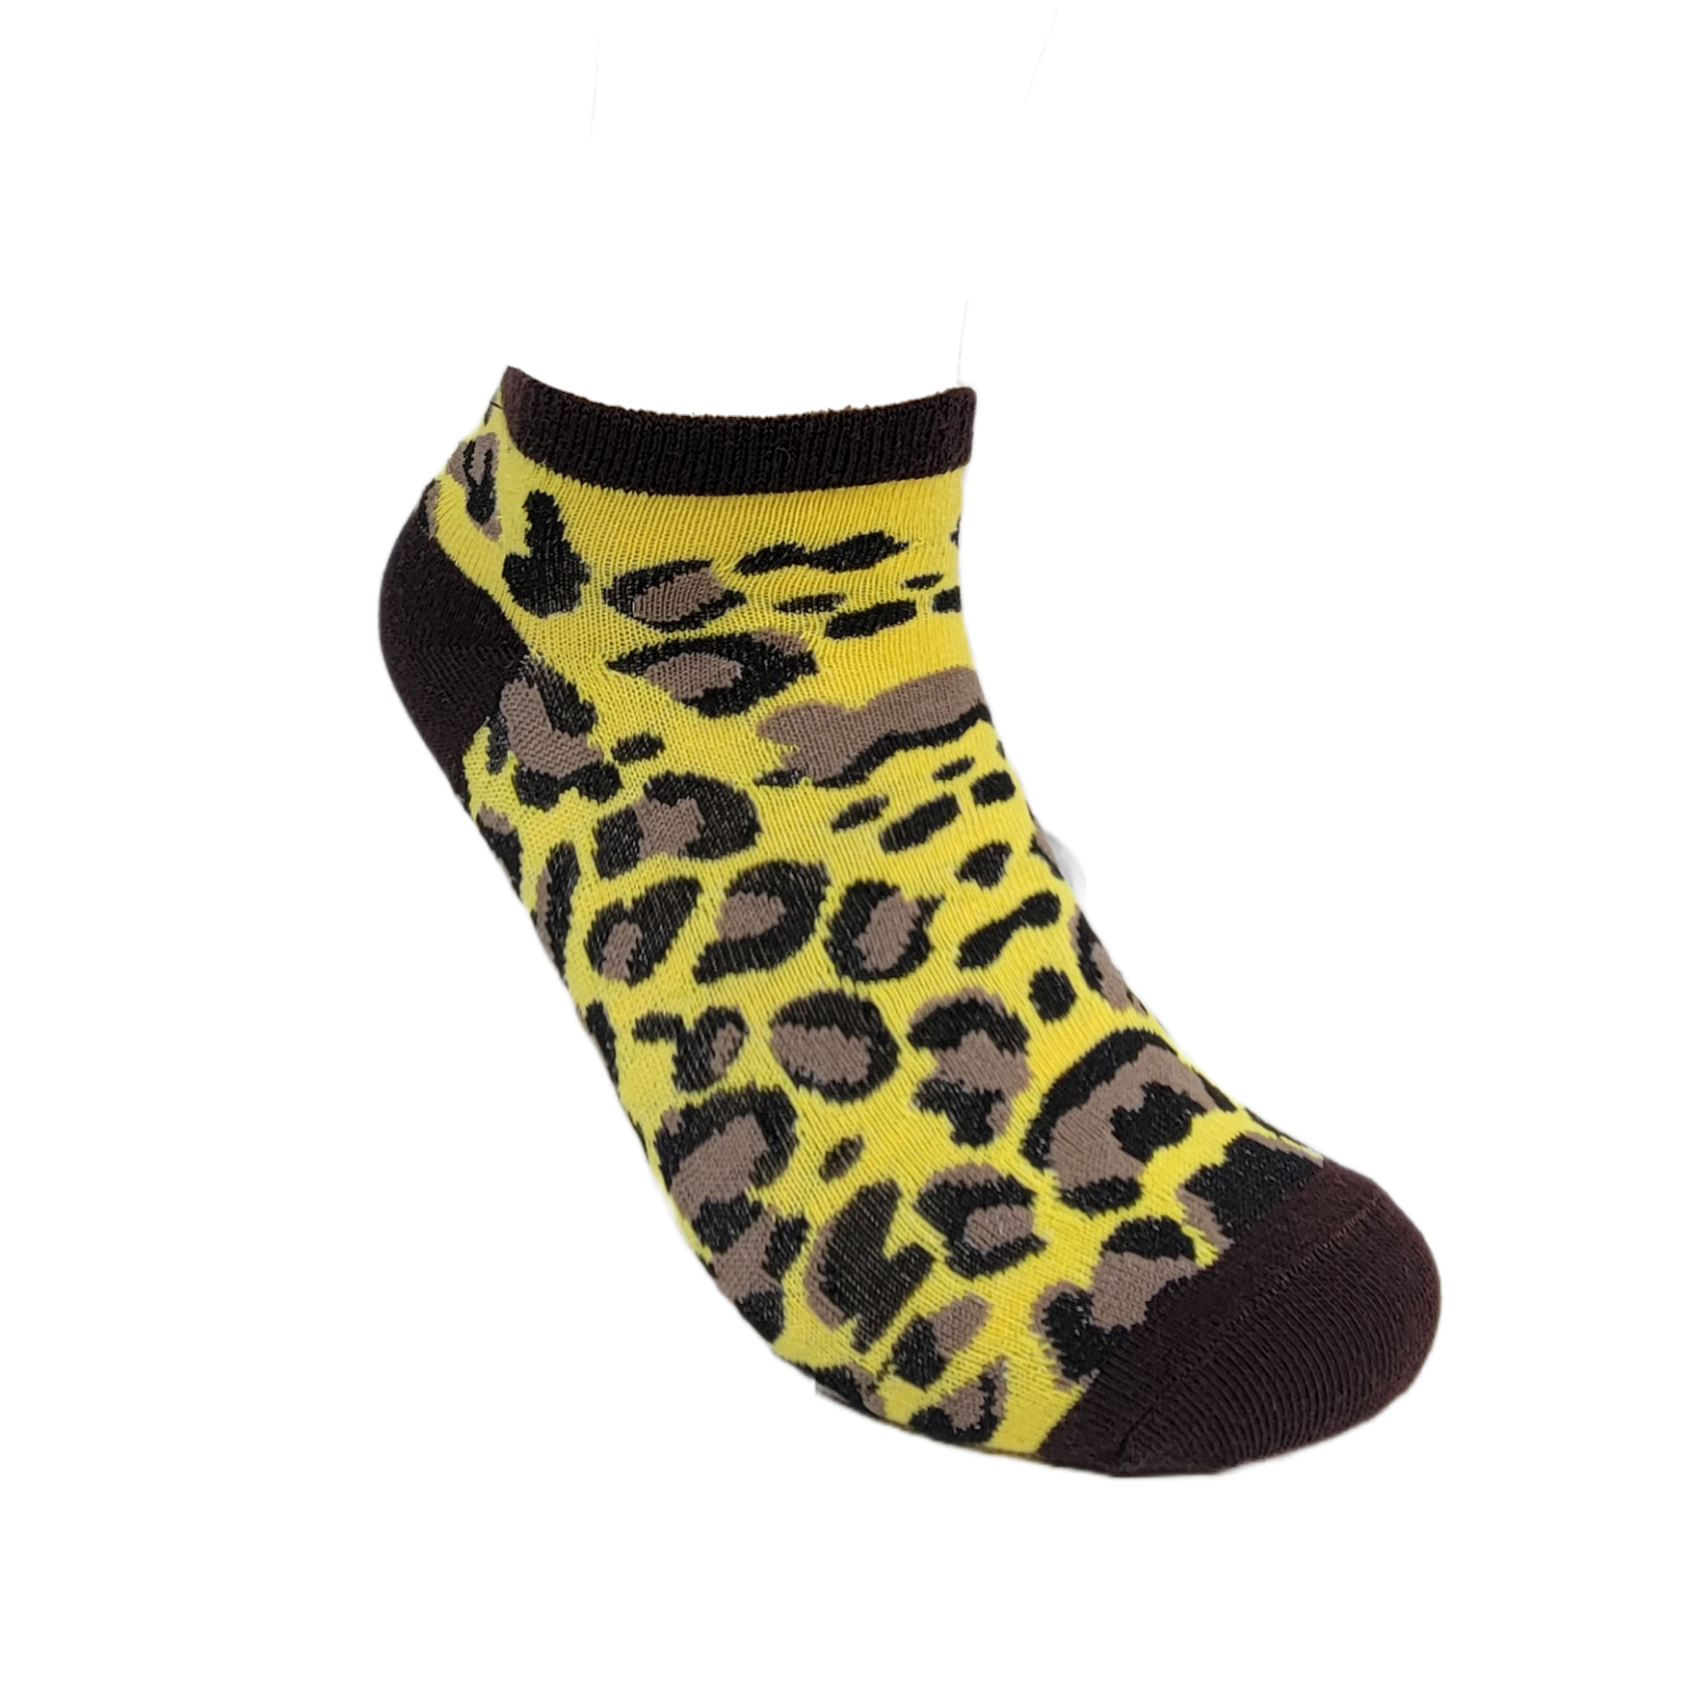 Animal Print Ankle Socks (Adult Medium)